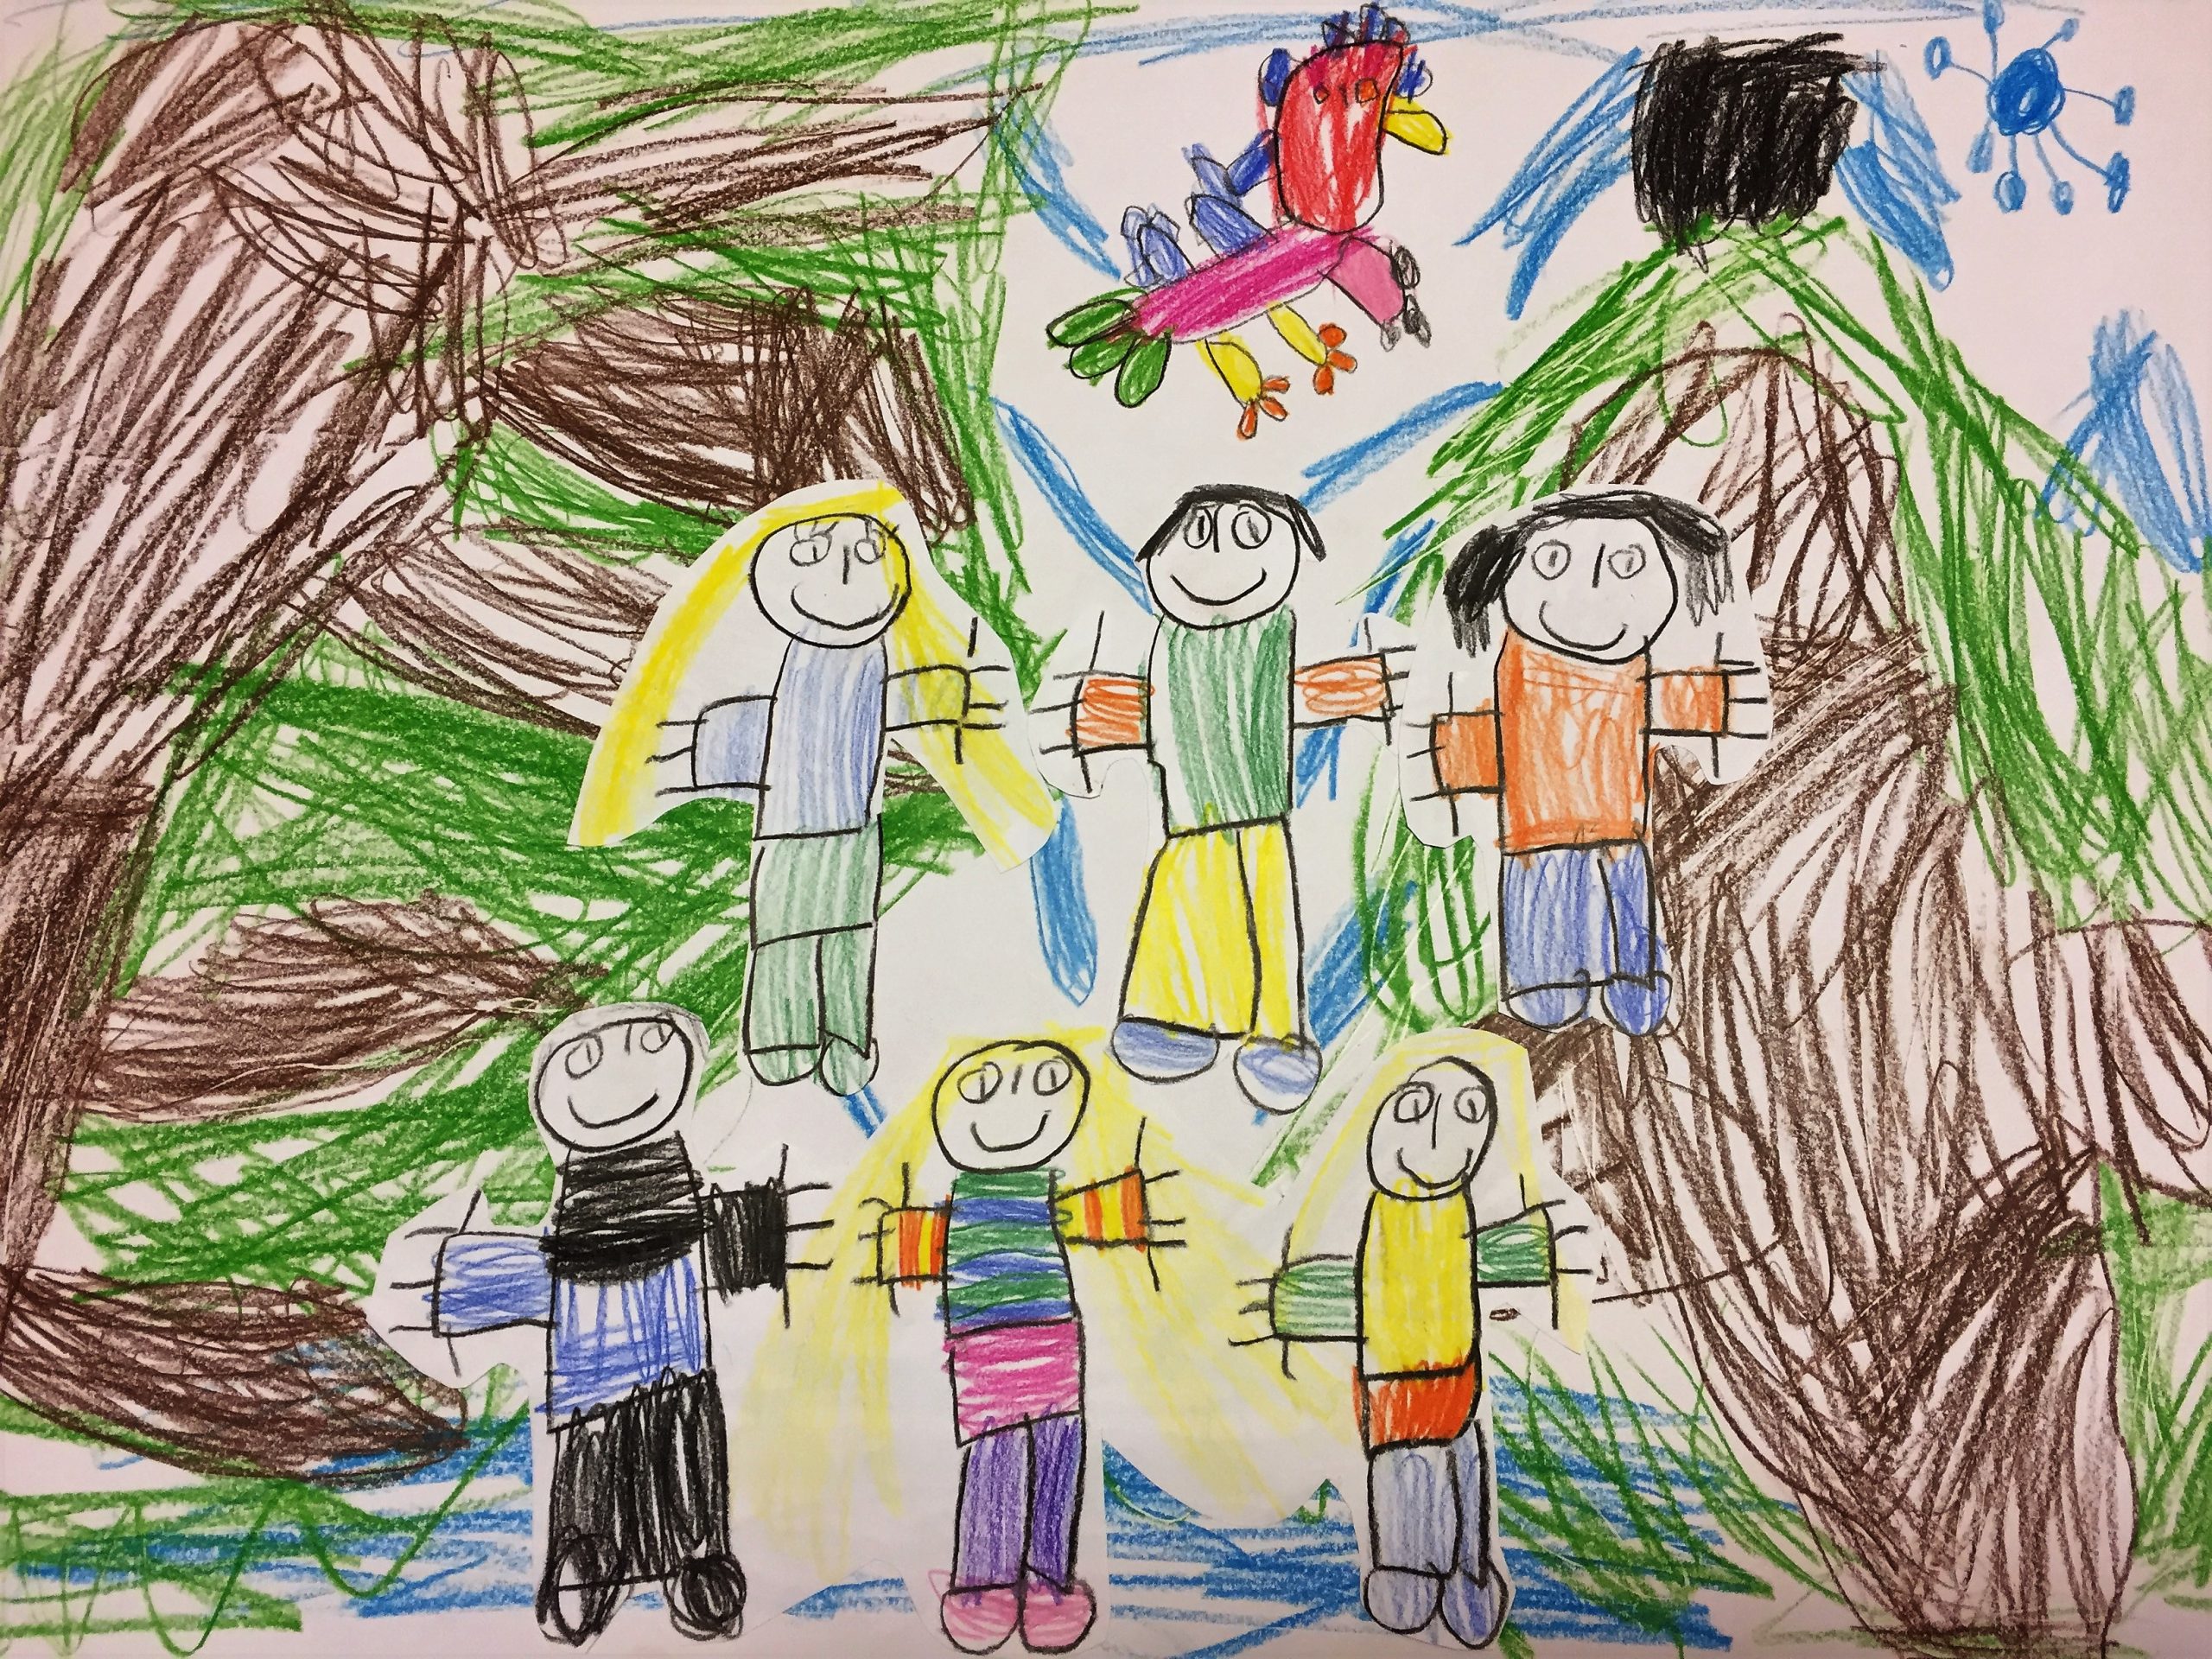 Im Kindergarten wurde gemeinsam beschlossen, dass alle deine Erzieher und Erzieherinnen sowie deine Freunde einen winterlichen Waldspaziergang machen.